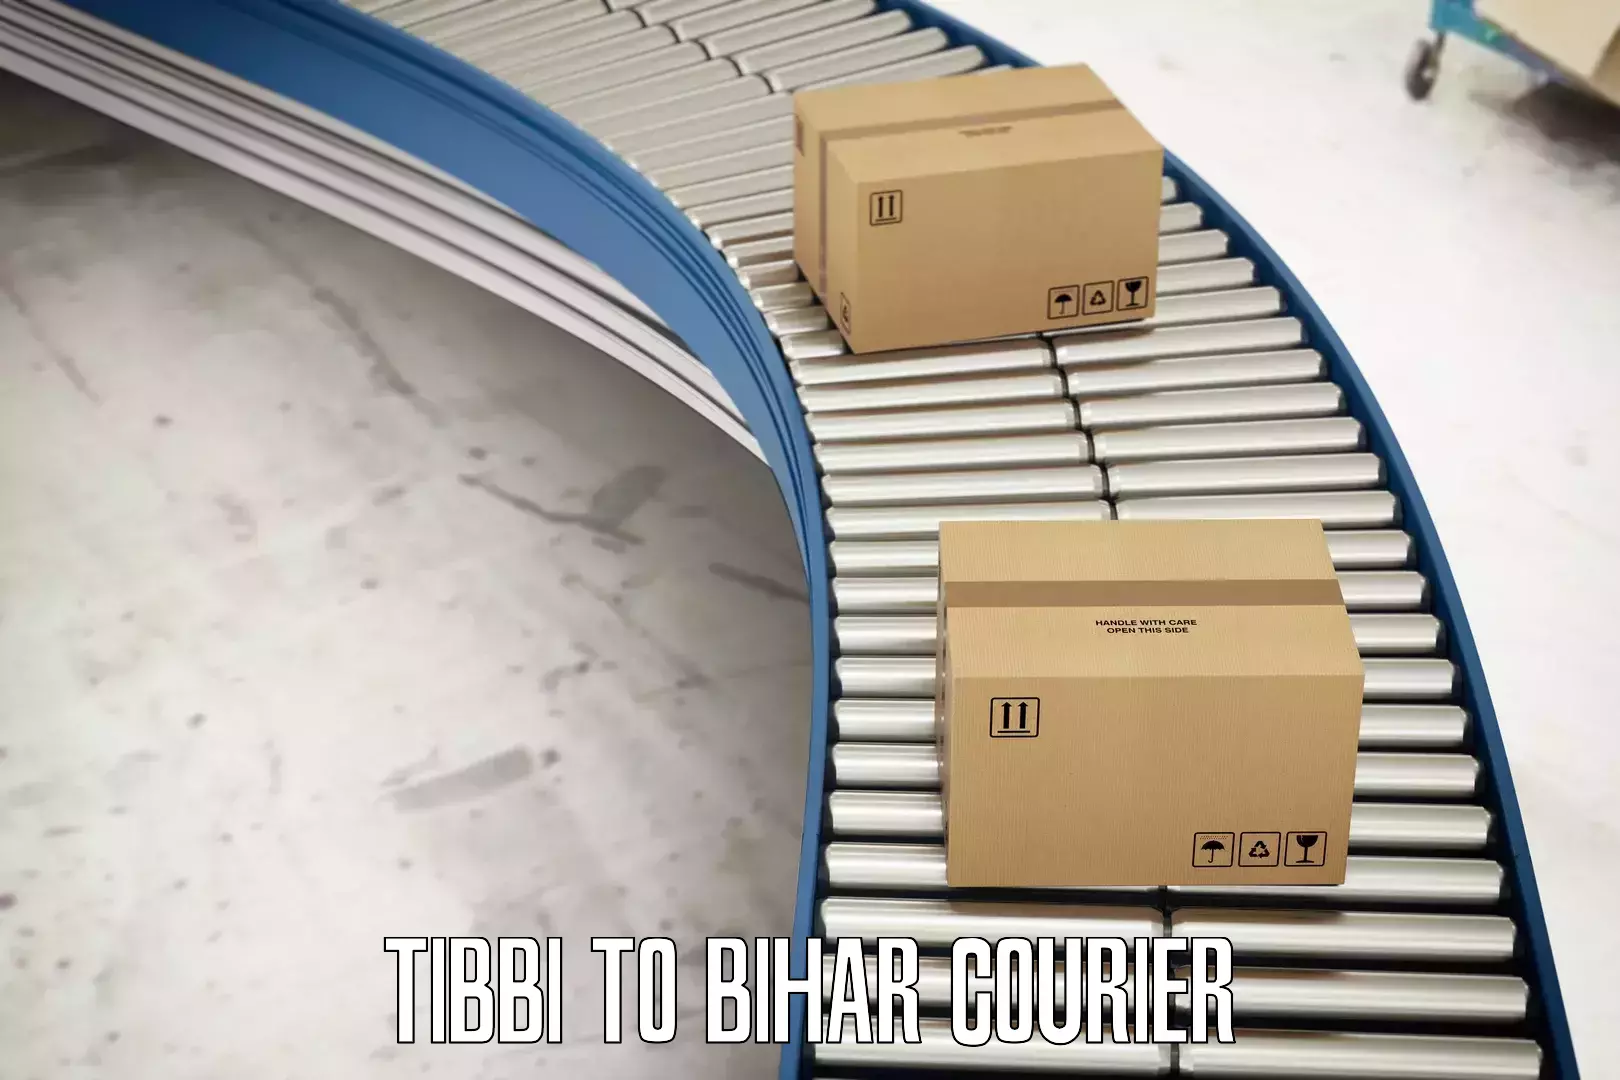 Courier service comparison Tibbi to Biraul